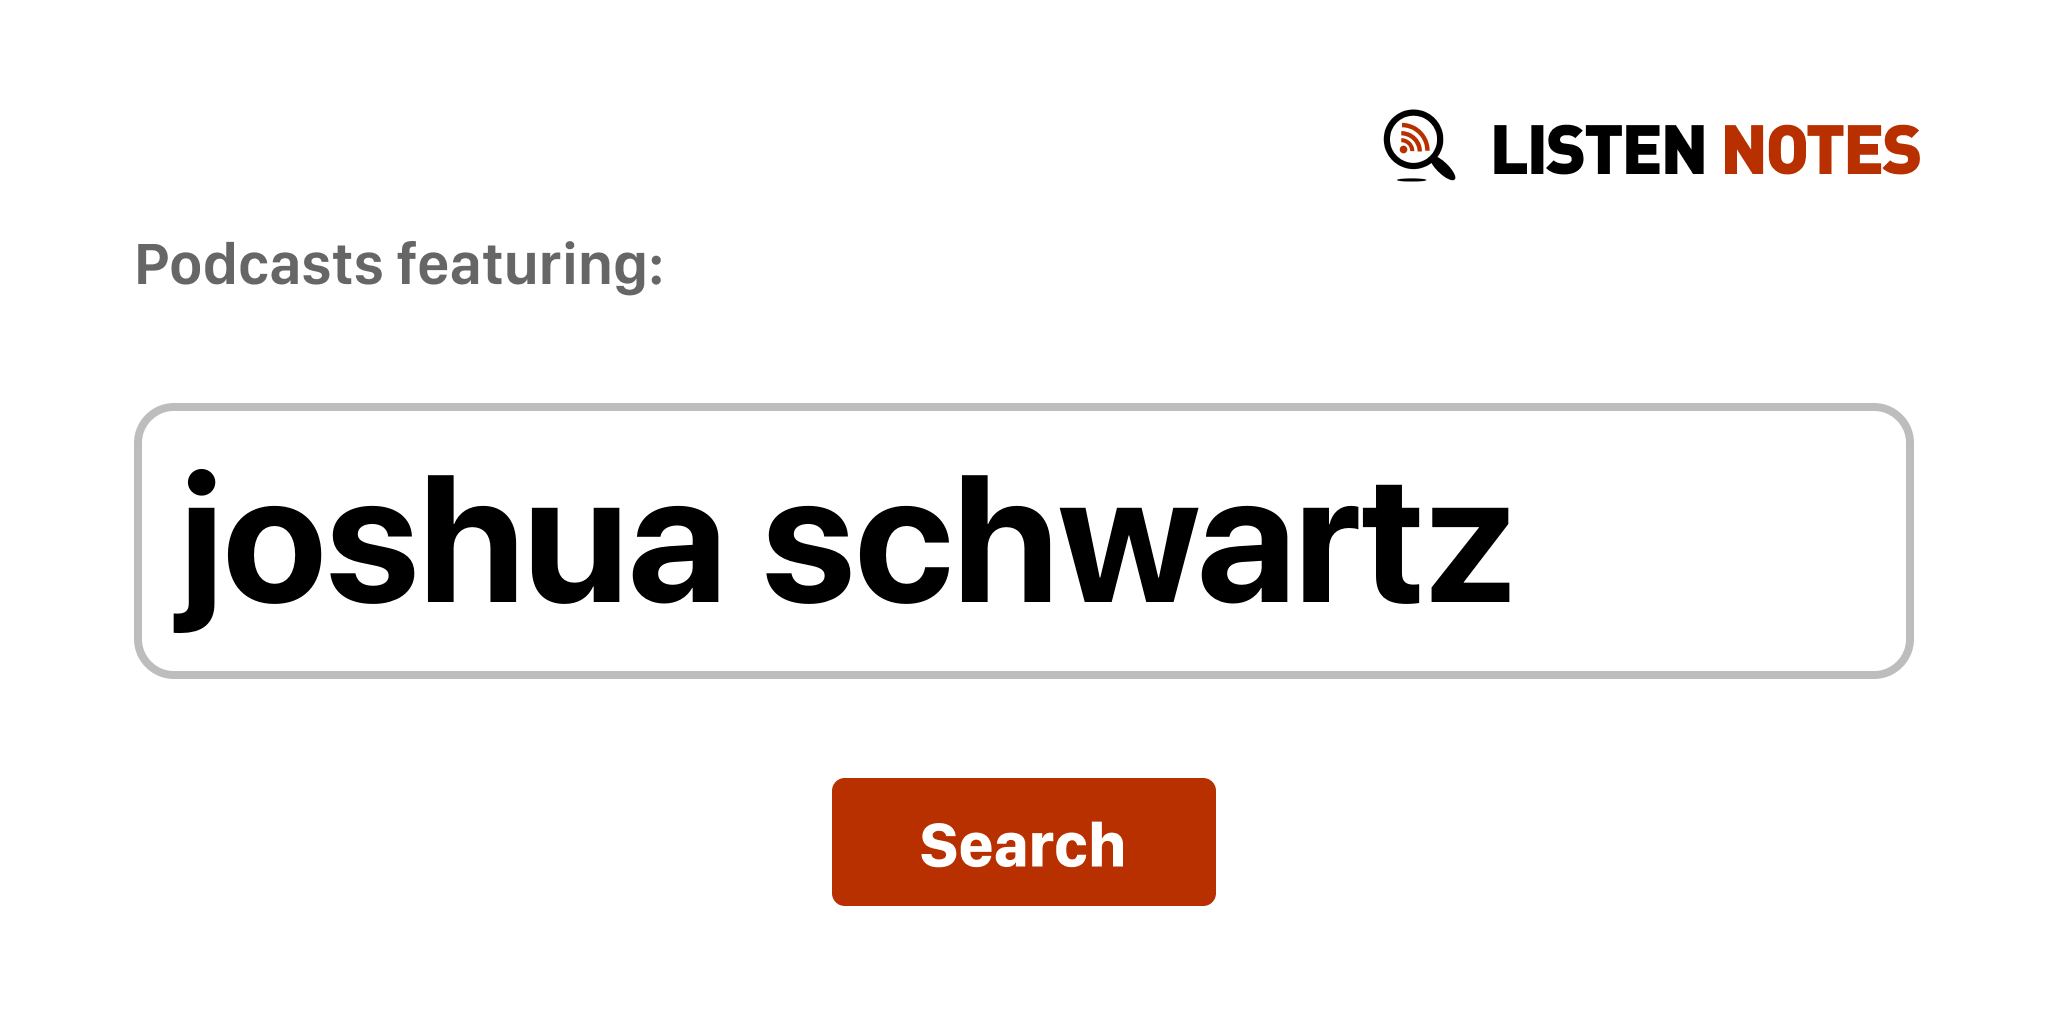 Joshua Schwartz - Top podcast episodes